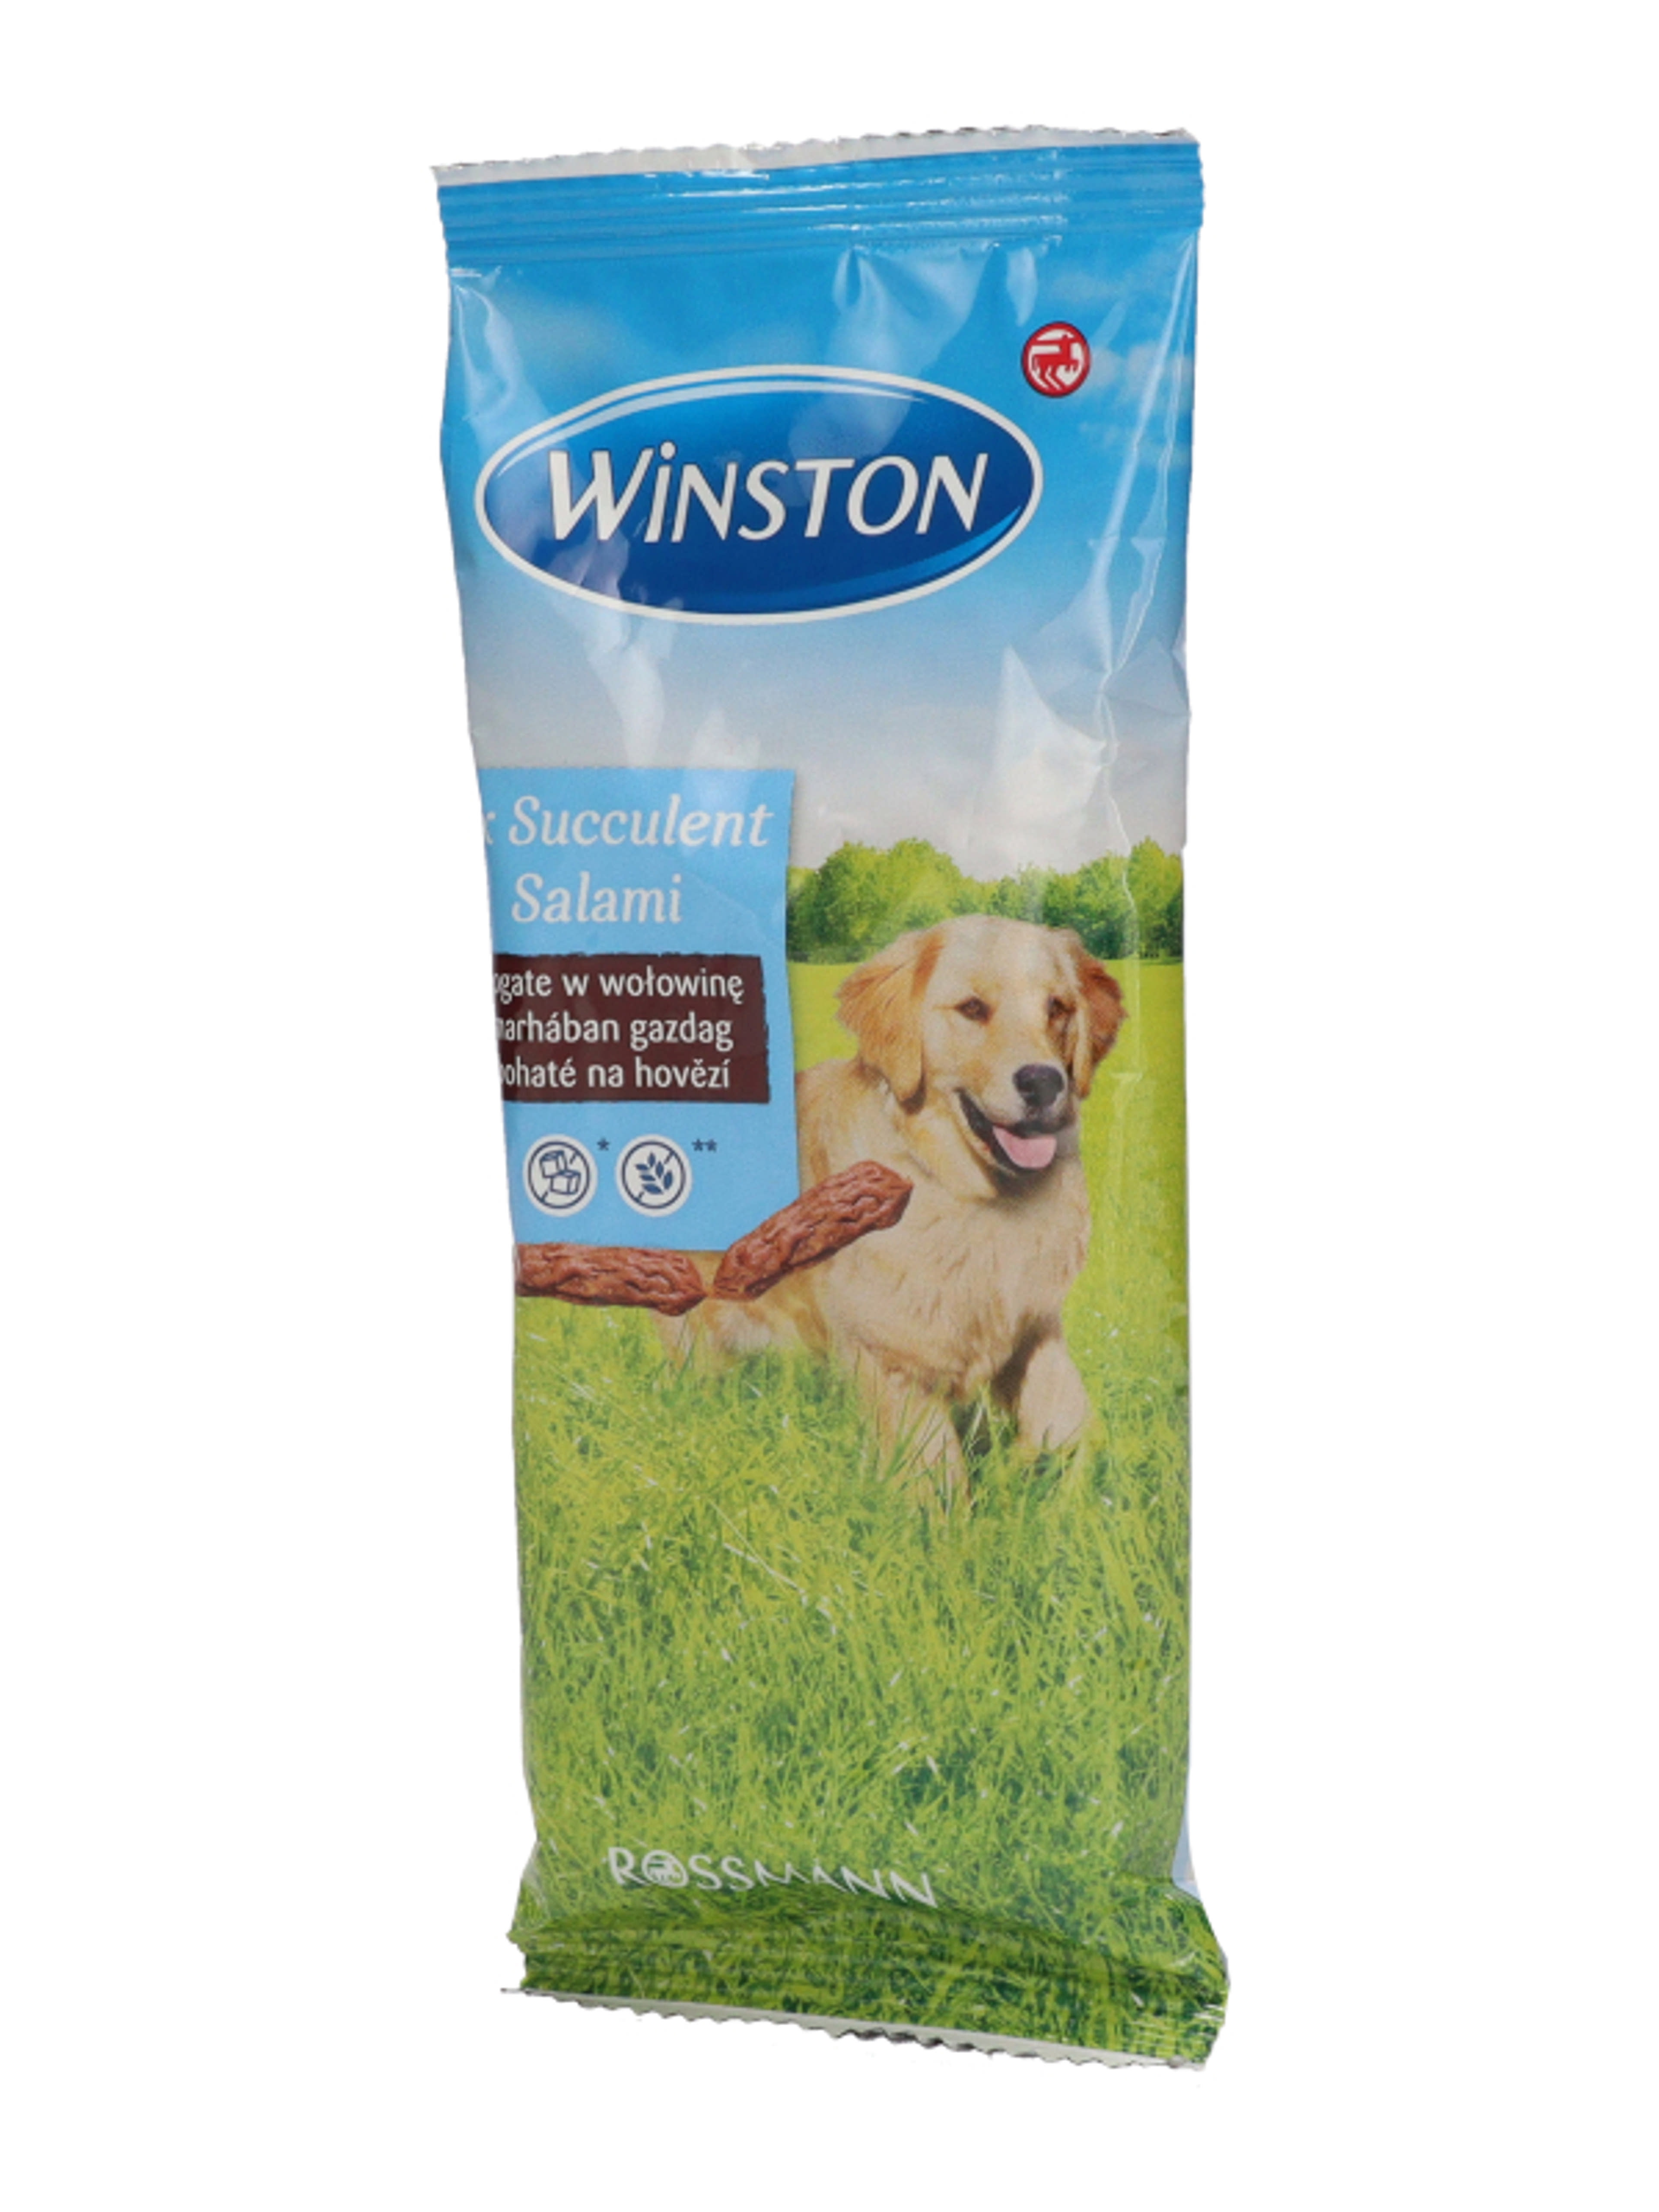 Winston jutalomfalat kutyáknak, szaftos szalálmi - 60 g - 8db-3